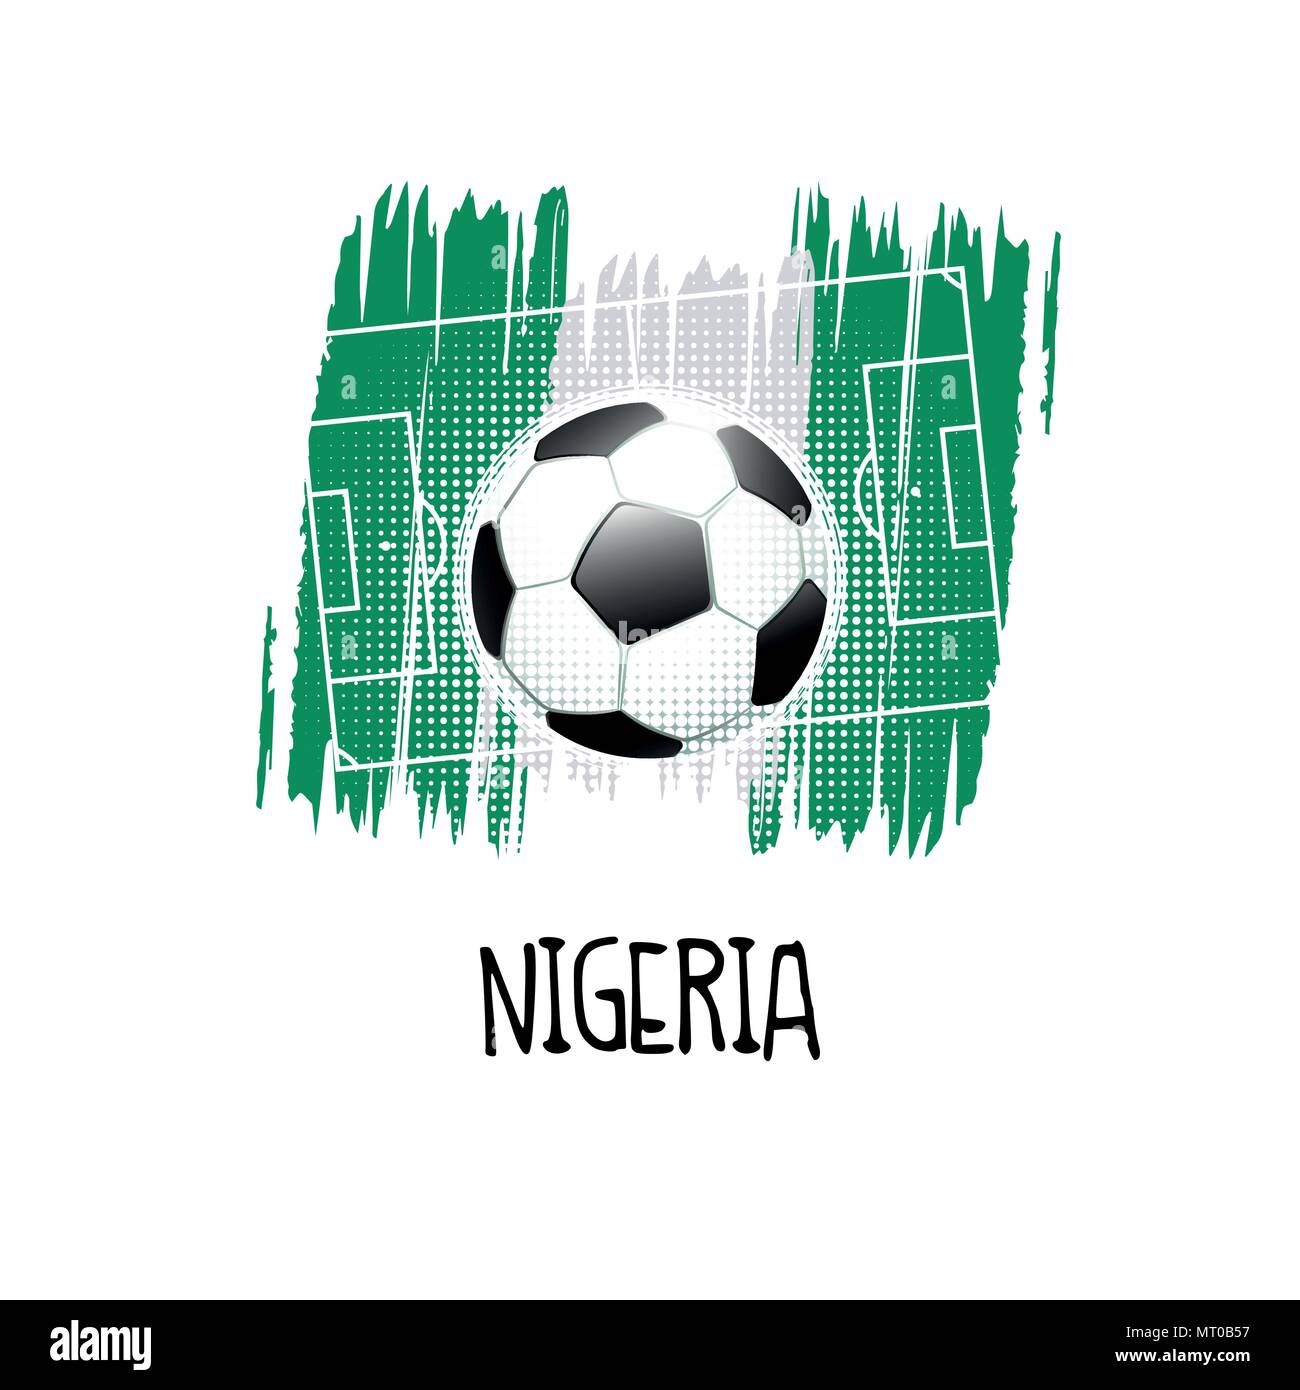 Scritto a mano la parola "NIGERIA" con pallone da calcio, campo da calcio e i colori astratti della bandiera nigeriana. Illustrazione Vettoriale. Illustrazione Vettoriale